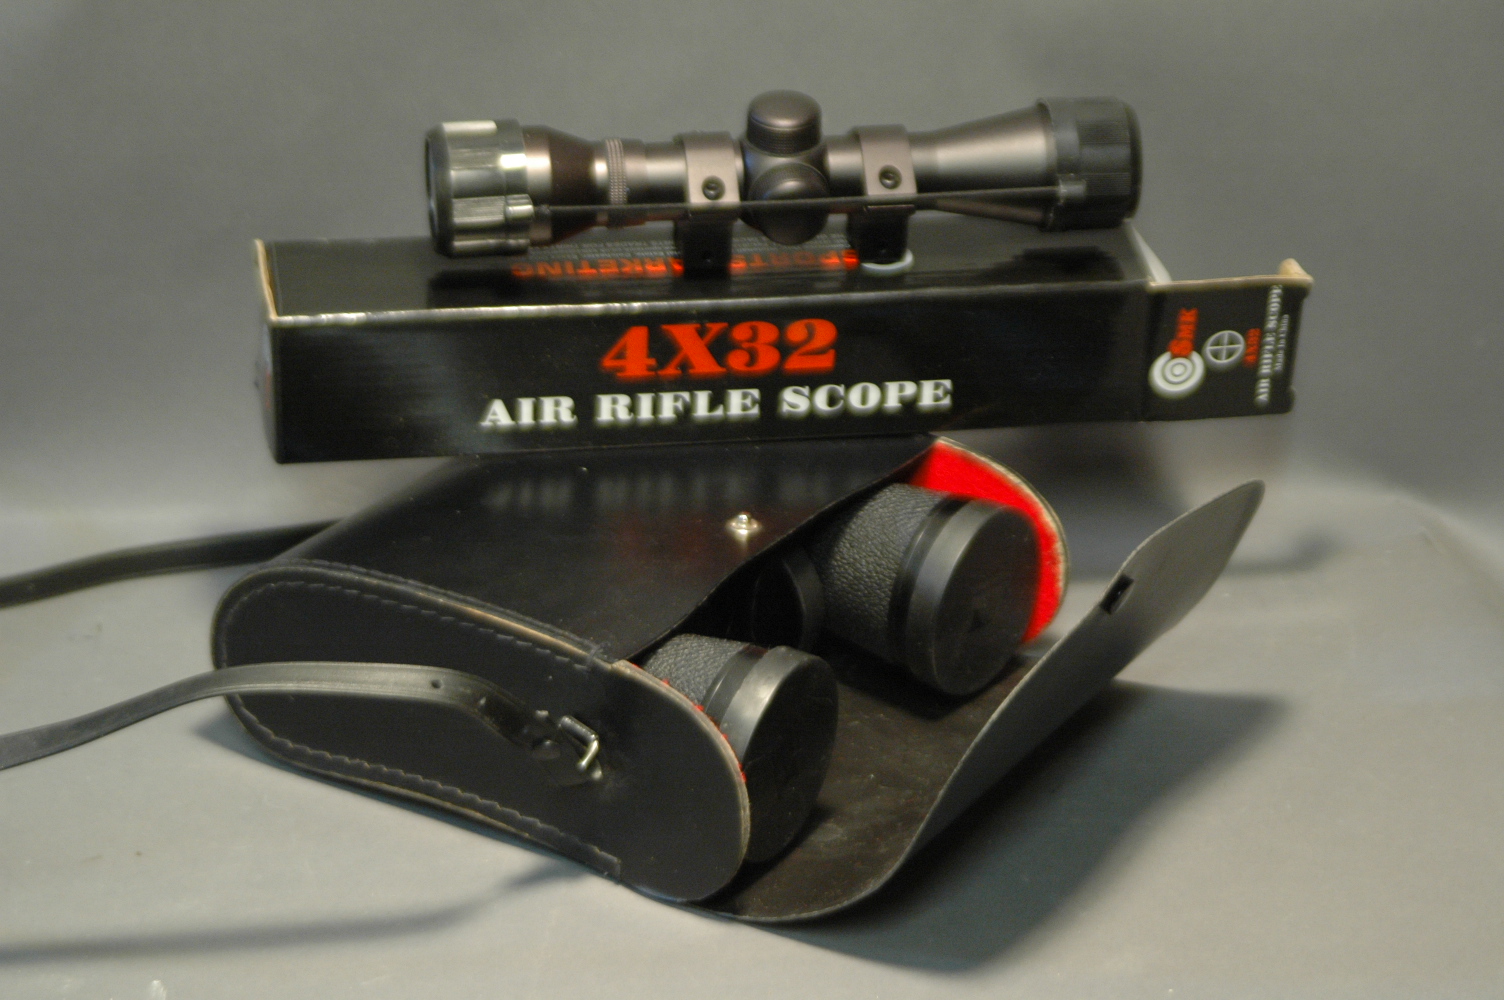 SMK 4 x 32 air rifle scope, brand new, and pair of Hanimex 7 x 50 binoculars.